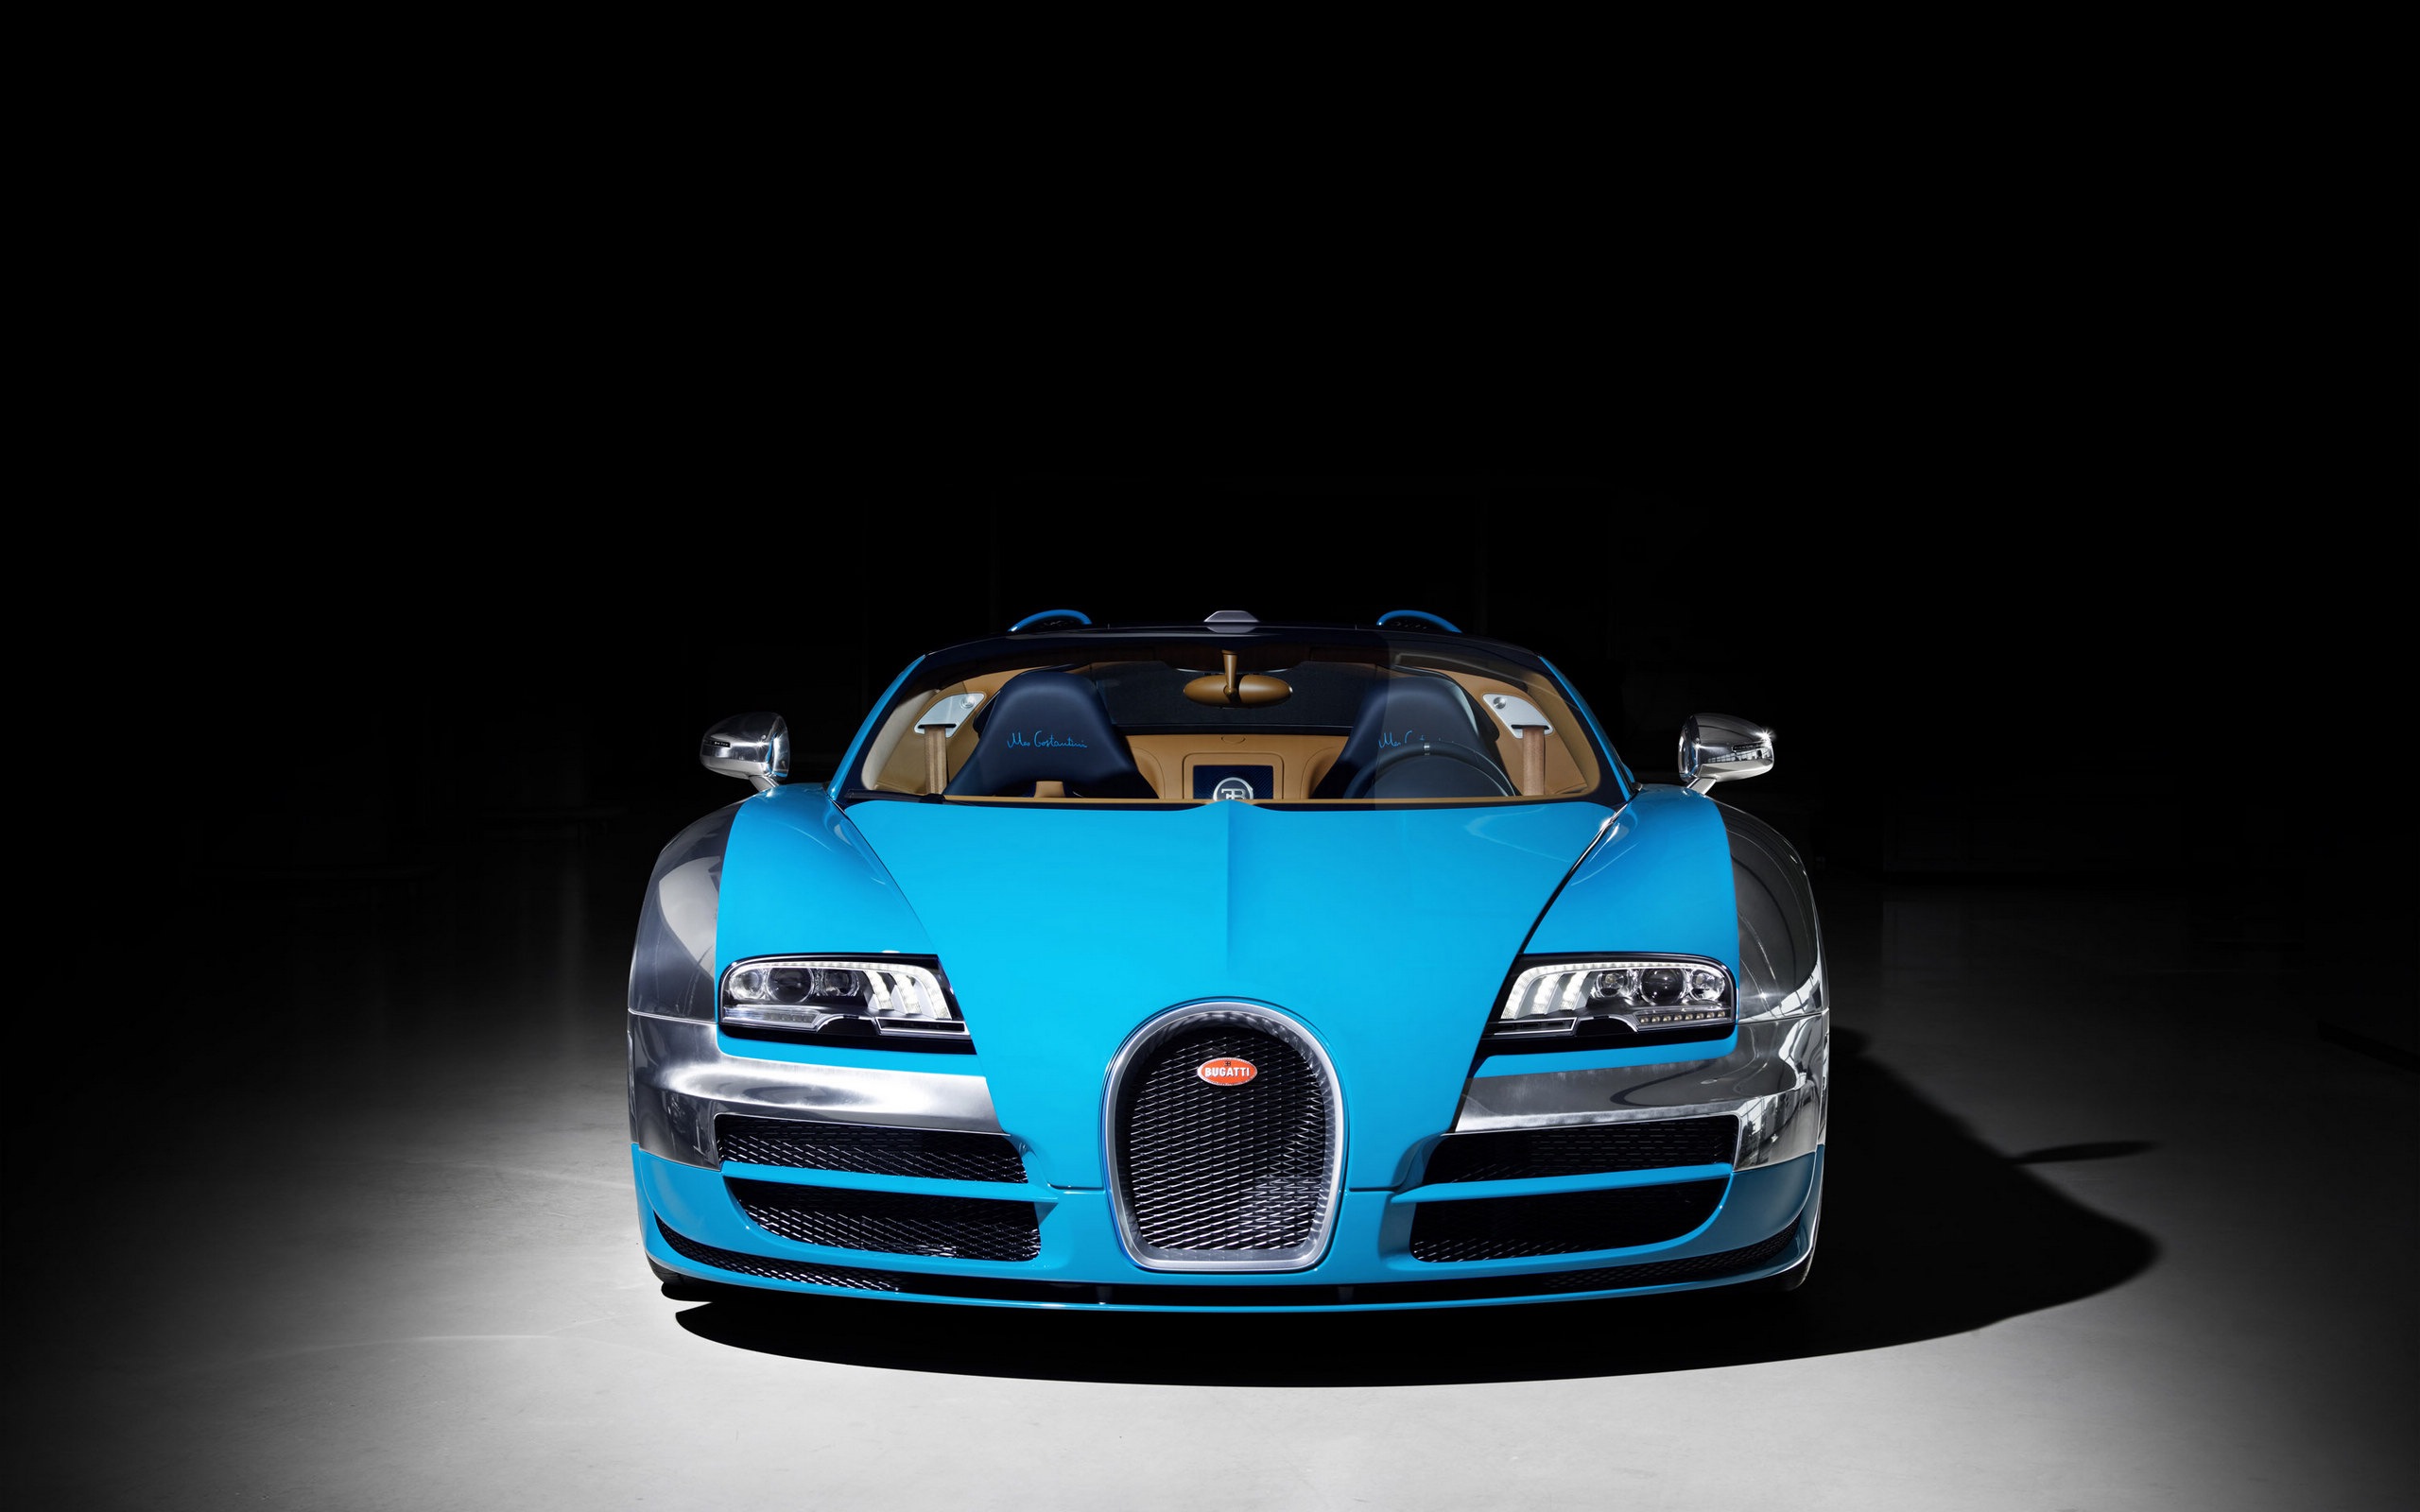 2013 Bugatti Veyron 16.4 Grand Sport Vitesse supercar fondos de pantalla de alta definición #2 - 2560x1600